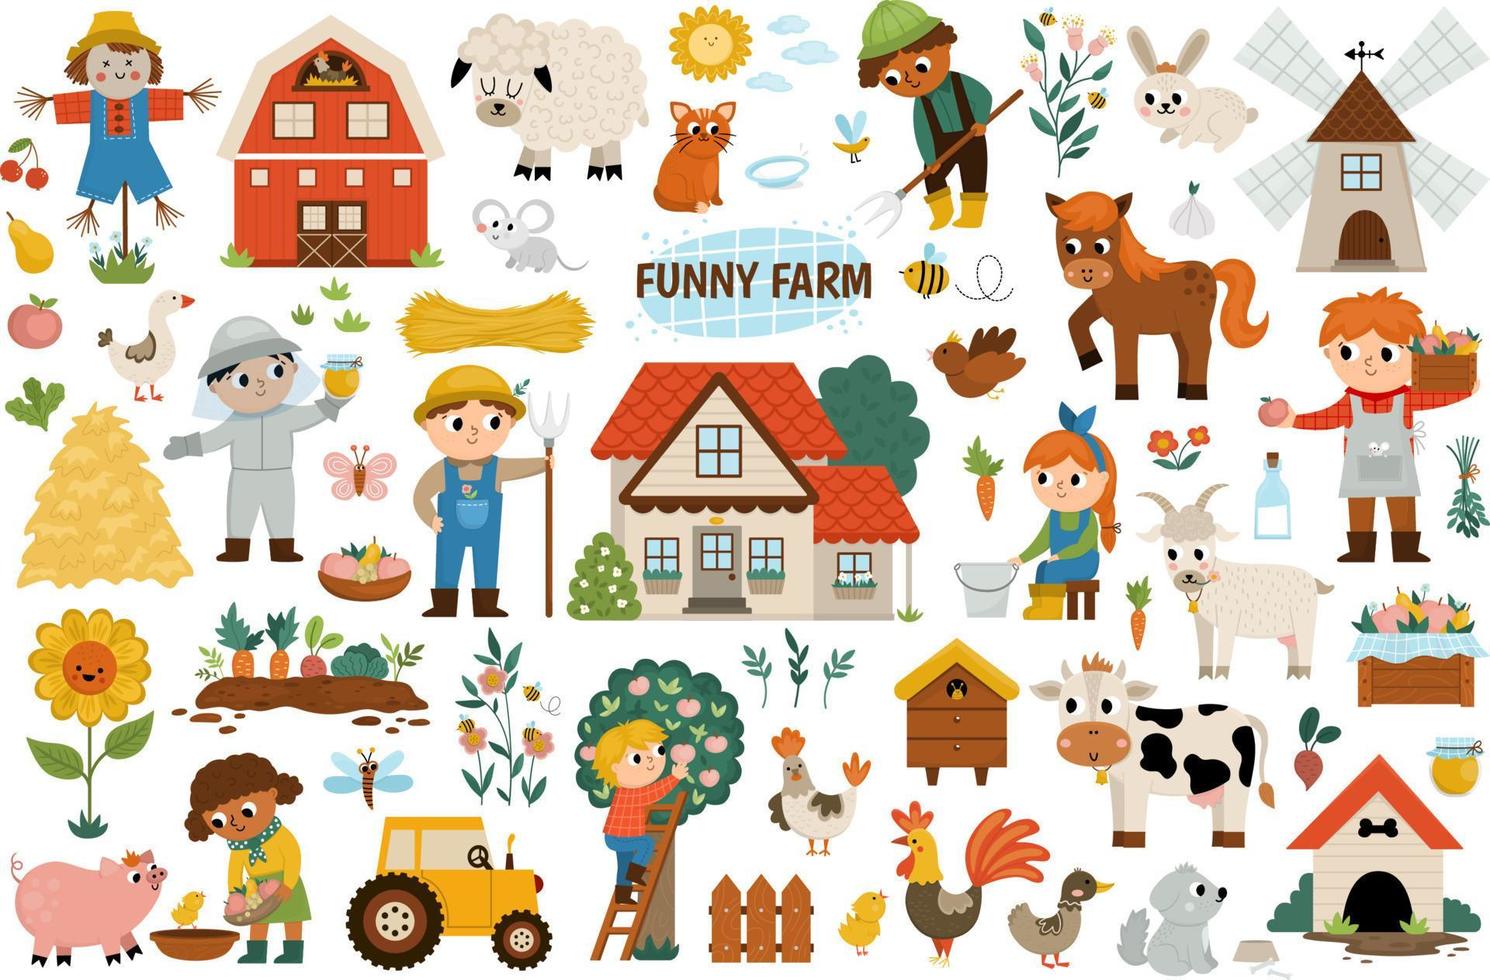 stor vektor bruka uppsättning. lantlig ikoner samling med rolig unge bönder, ladugård, Land hus, djur, fåglar, traktor, väderkvarn, hö staplar, frukt, grönsaker, bikupa. söt platt trädgård illustrationer